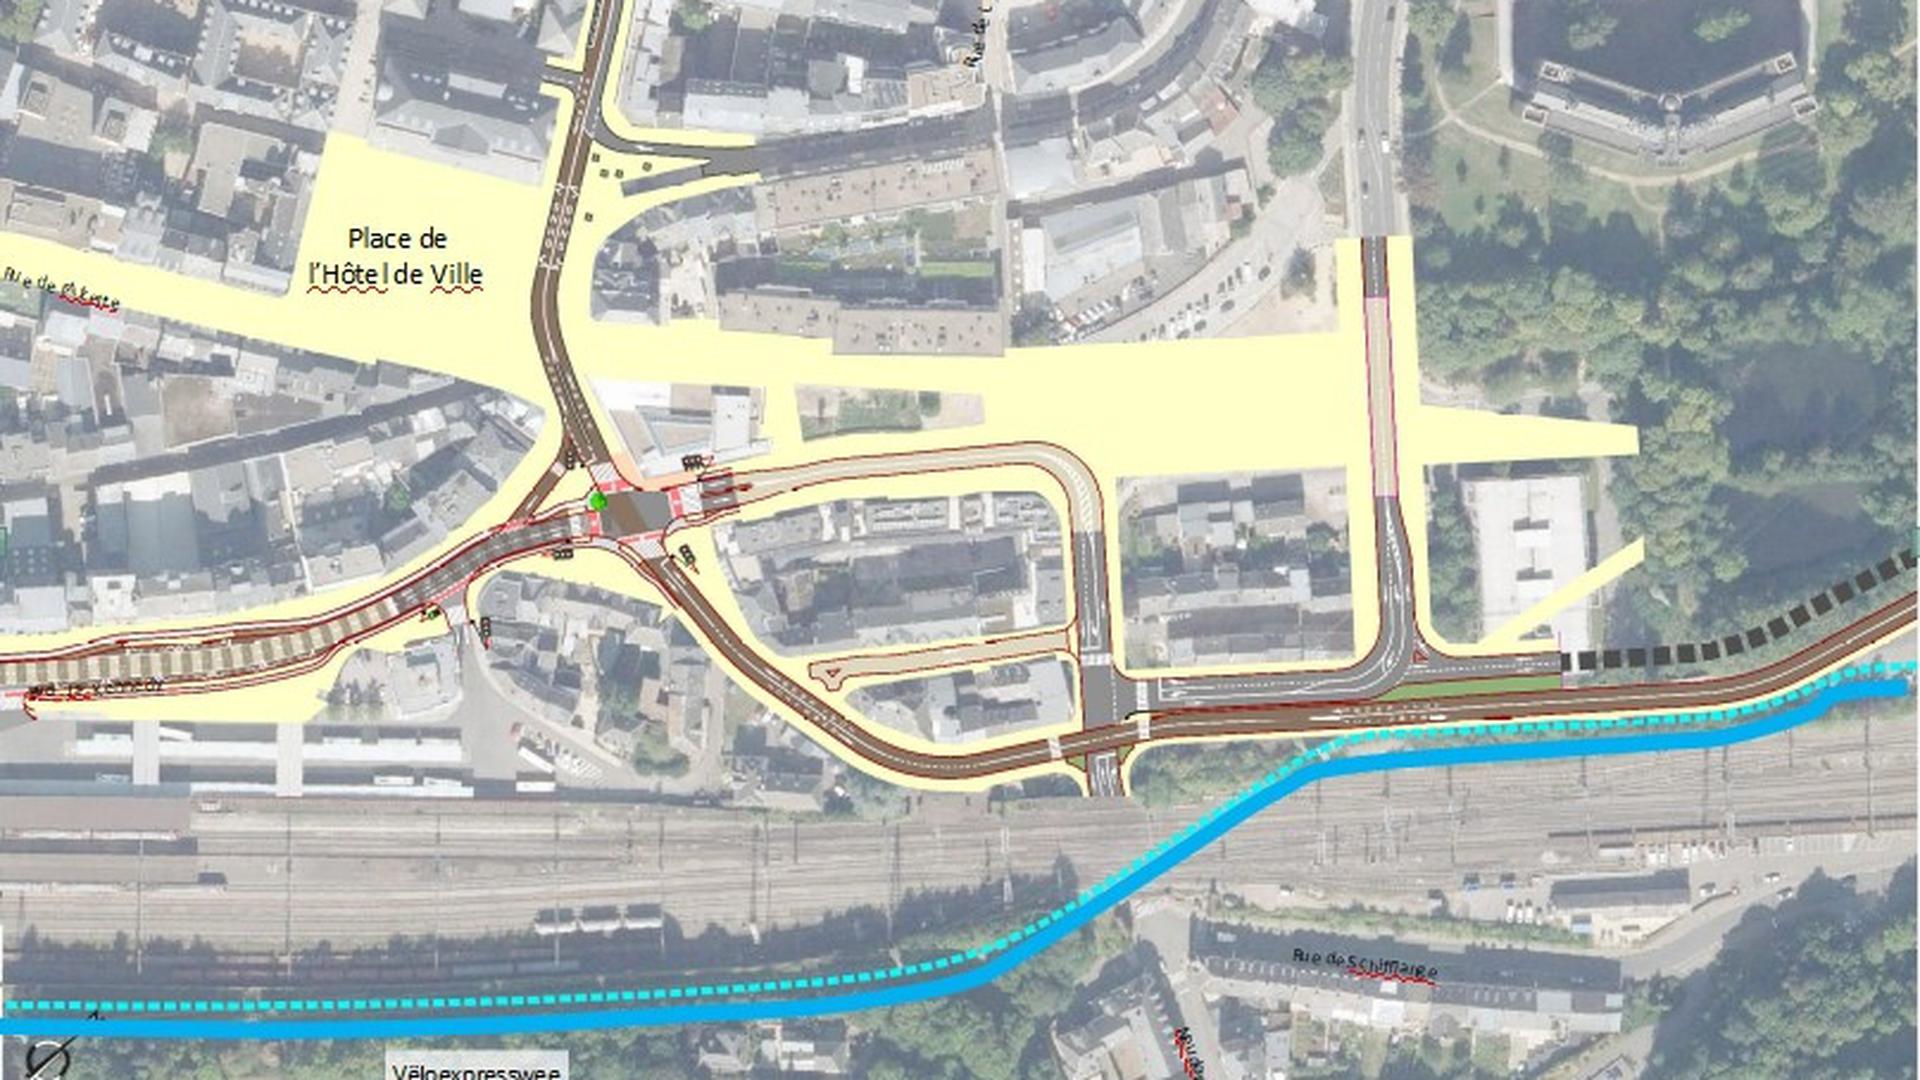 Voici comment le flux de circulation dans le centre d'Esch va changer. Sur la droite, la ligne de bus en direction d'Esch-Schifflange. Sans oublier les voies qui seront réservées aux transports en commun.